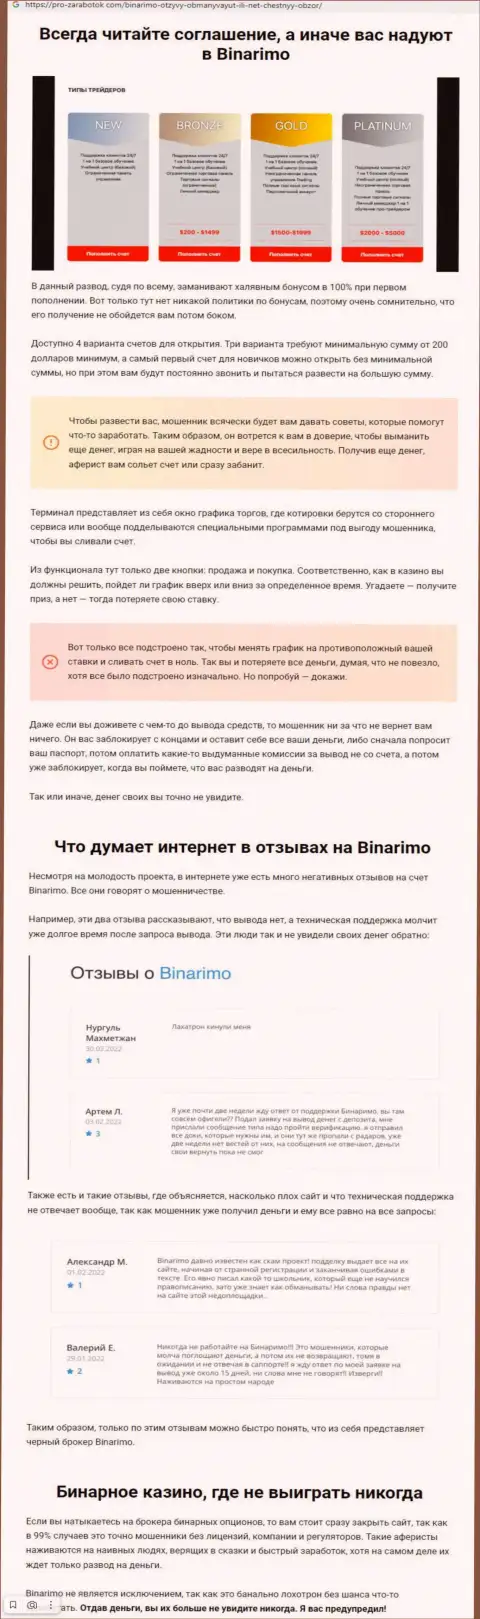 Binarimo - это internet мошенники, которым денежные средства перечислять не стоит ни при каких обстоятельствах (обзор махинаций)